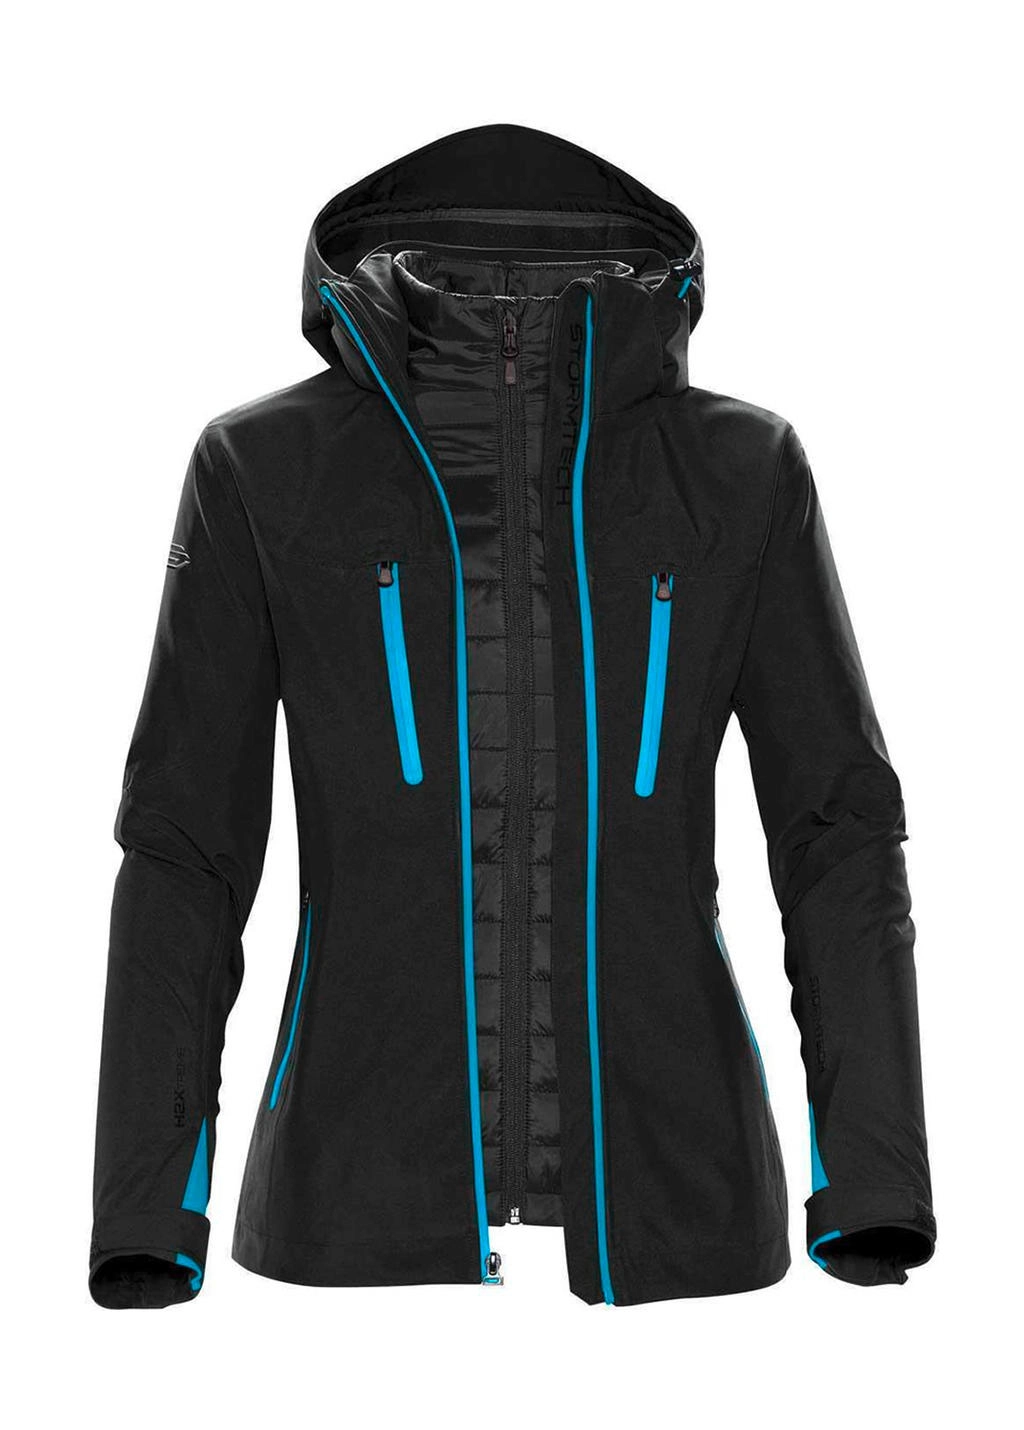 Women`s Matrix System Jacket zum Besticken und Bedrucken in der Farbe Black/Electric mit Ihren Logo, Schriftzug oder Motiv.